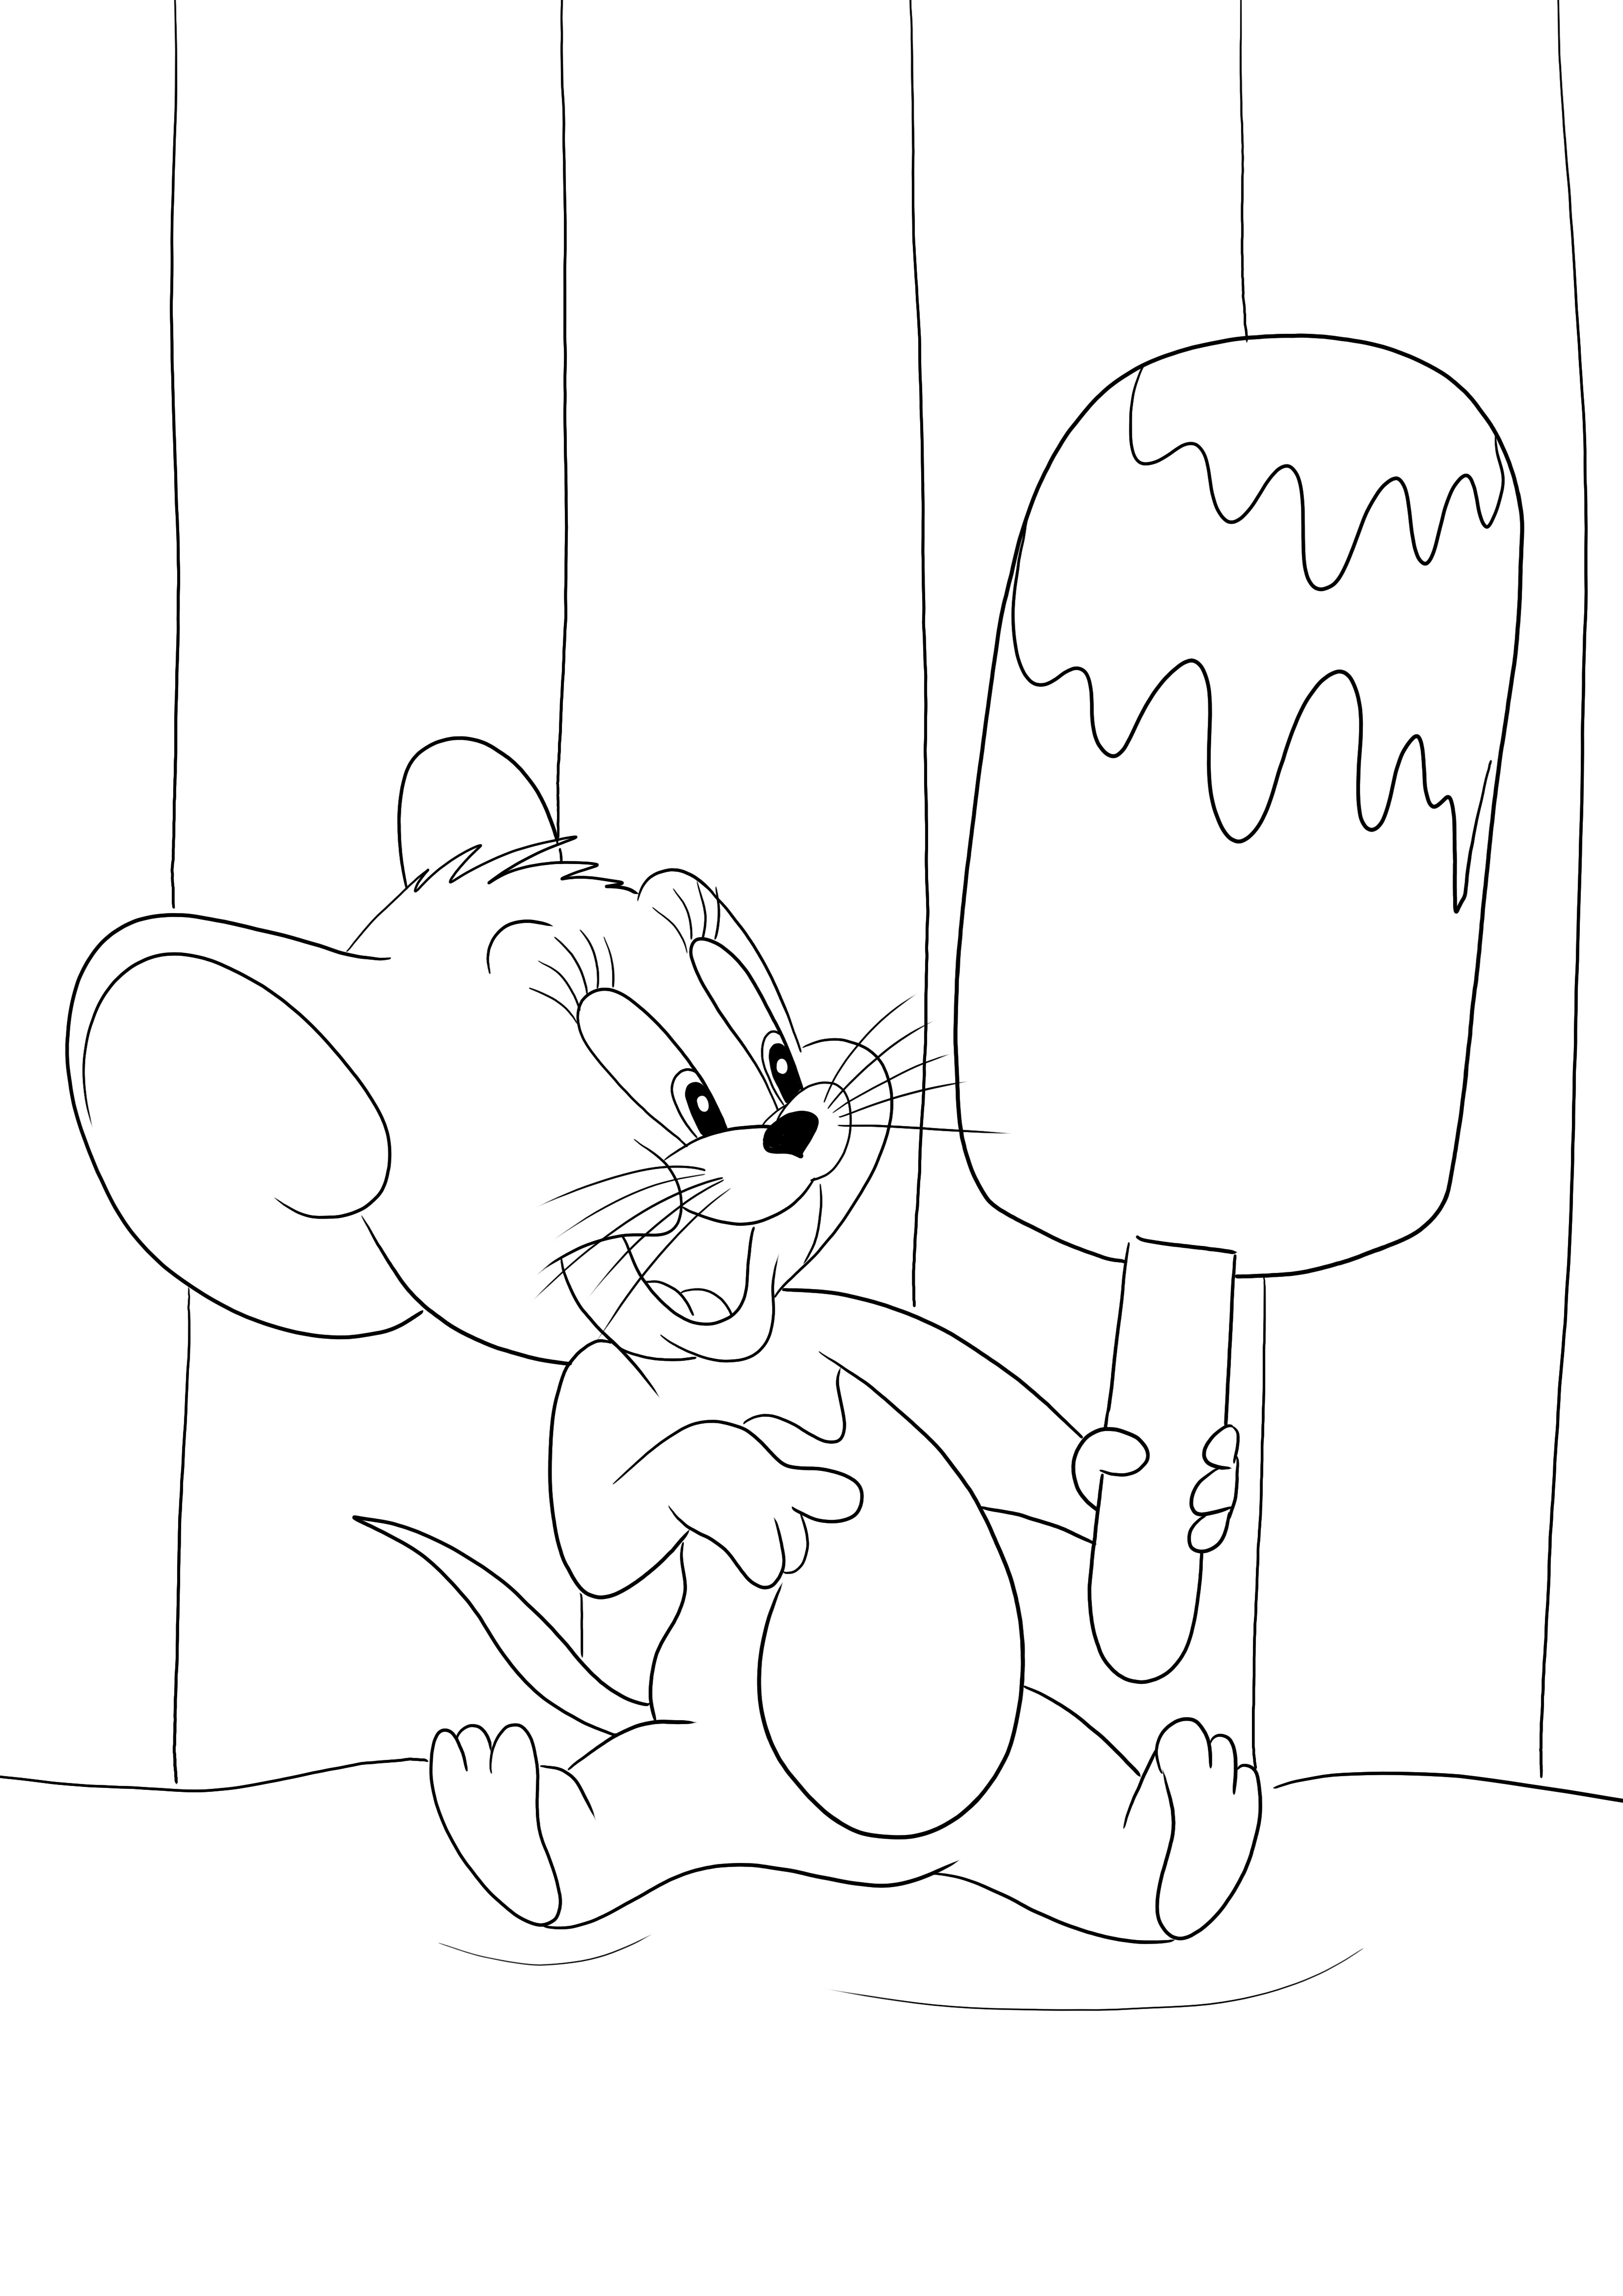 Jerry en zijn grote ijsje kunnen gratis door kinderen worden bedrukt en gekleurd kleurplaat